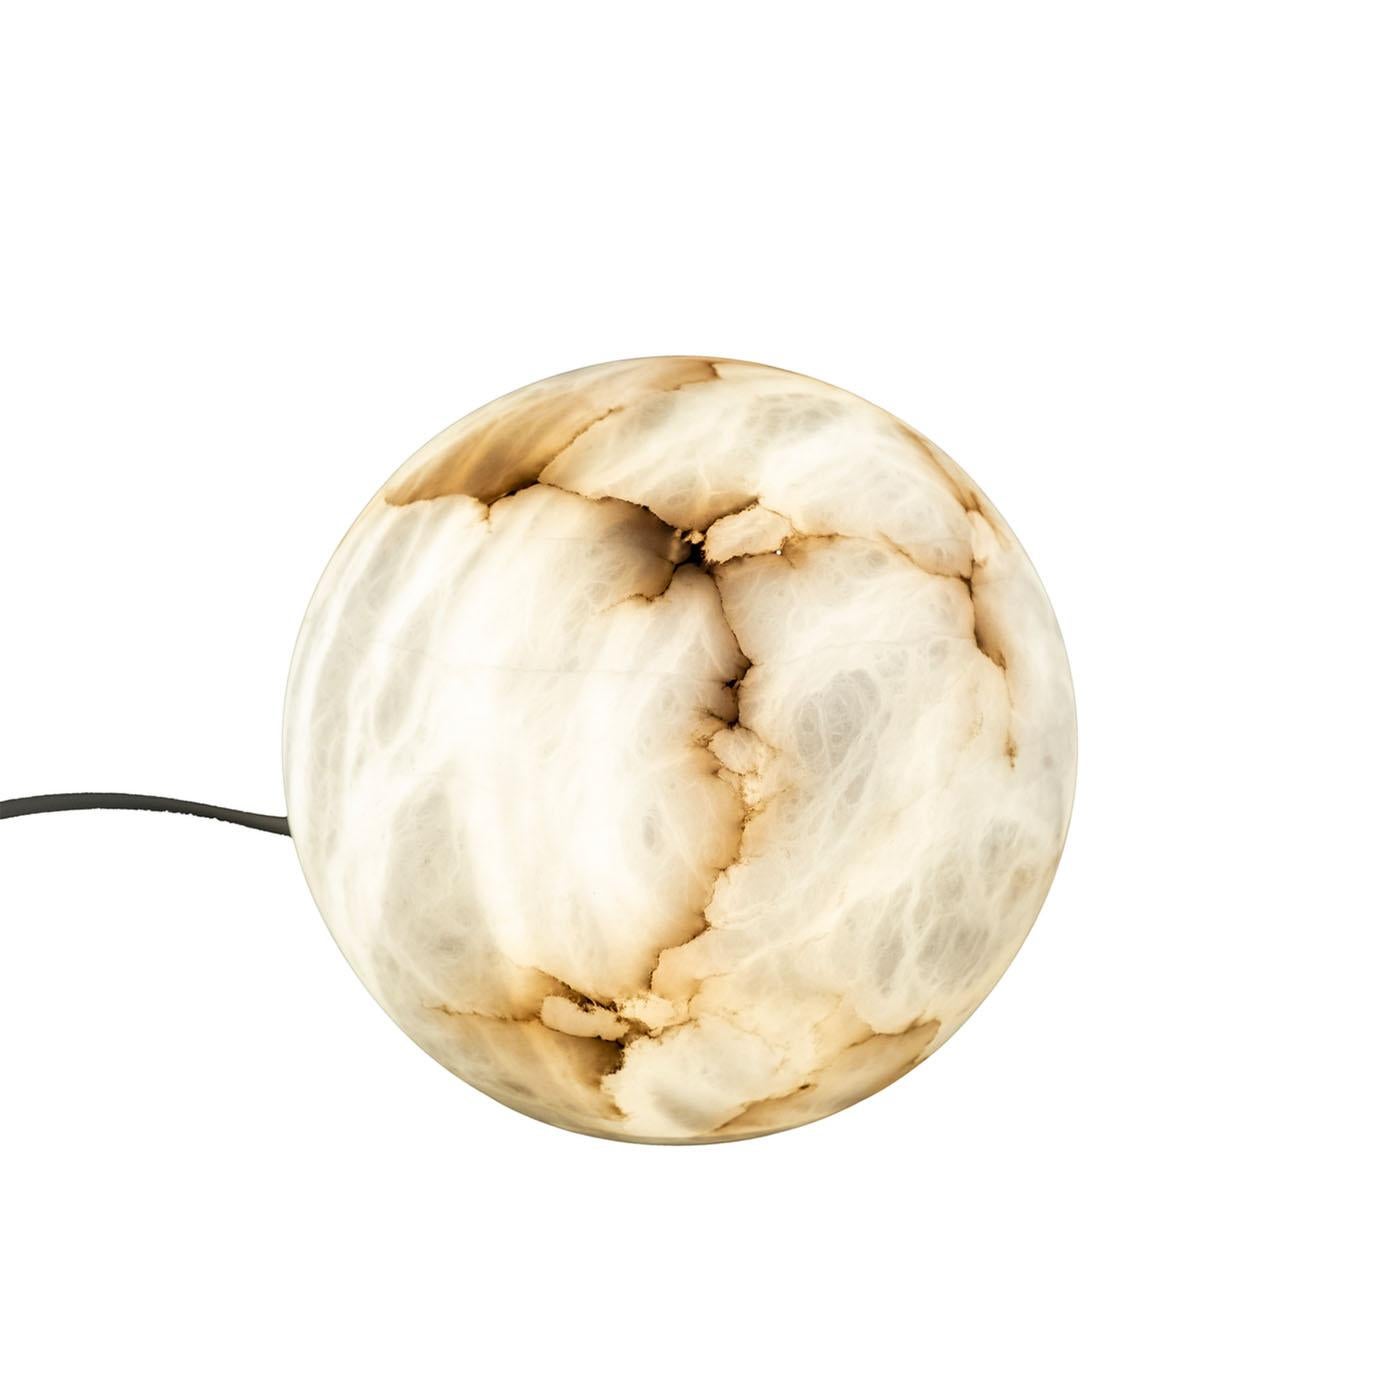 Lampe de table en albâtre naturel de forme ronde. Les veines sont la principale caractéristique de la pierre d'albâtre, allant du blanc au brun. Lorsque la lampe est allumée, toutes les différentes nuances sont mises en valeur, ce qui fait de la